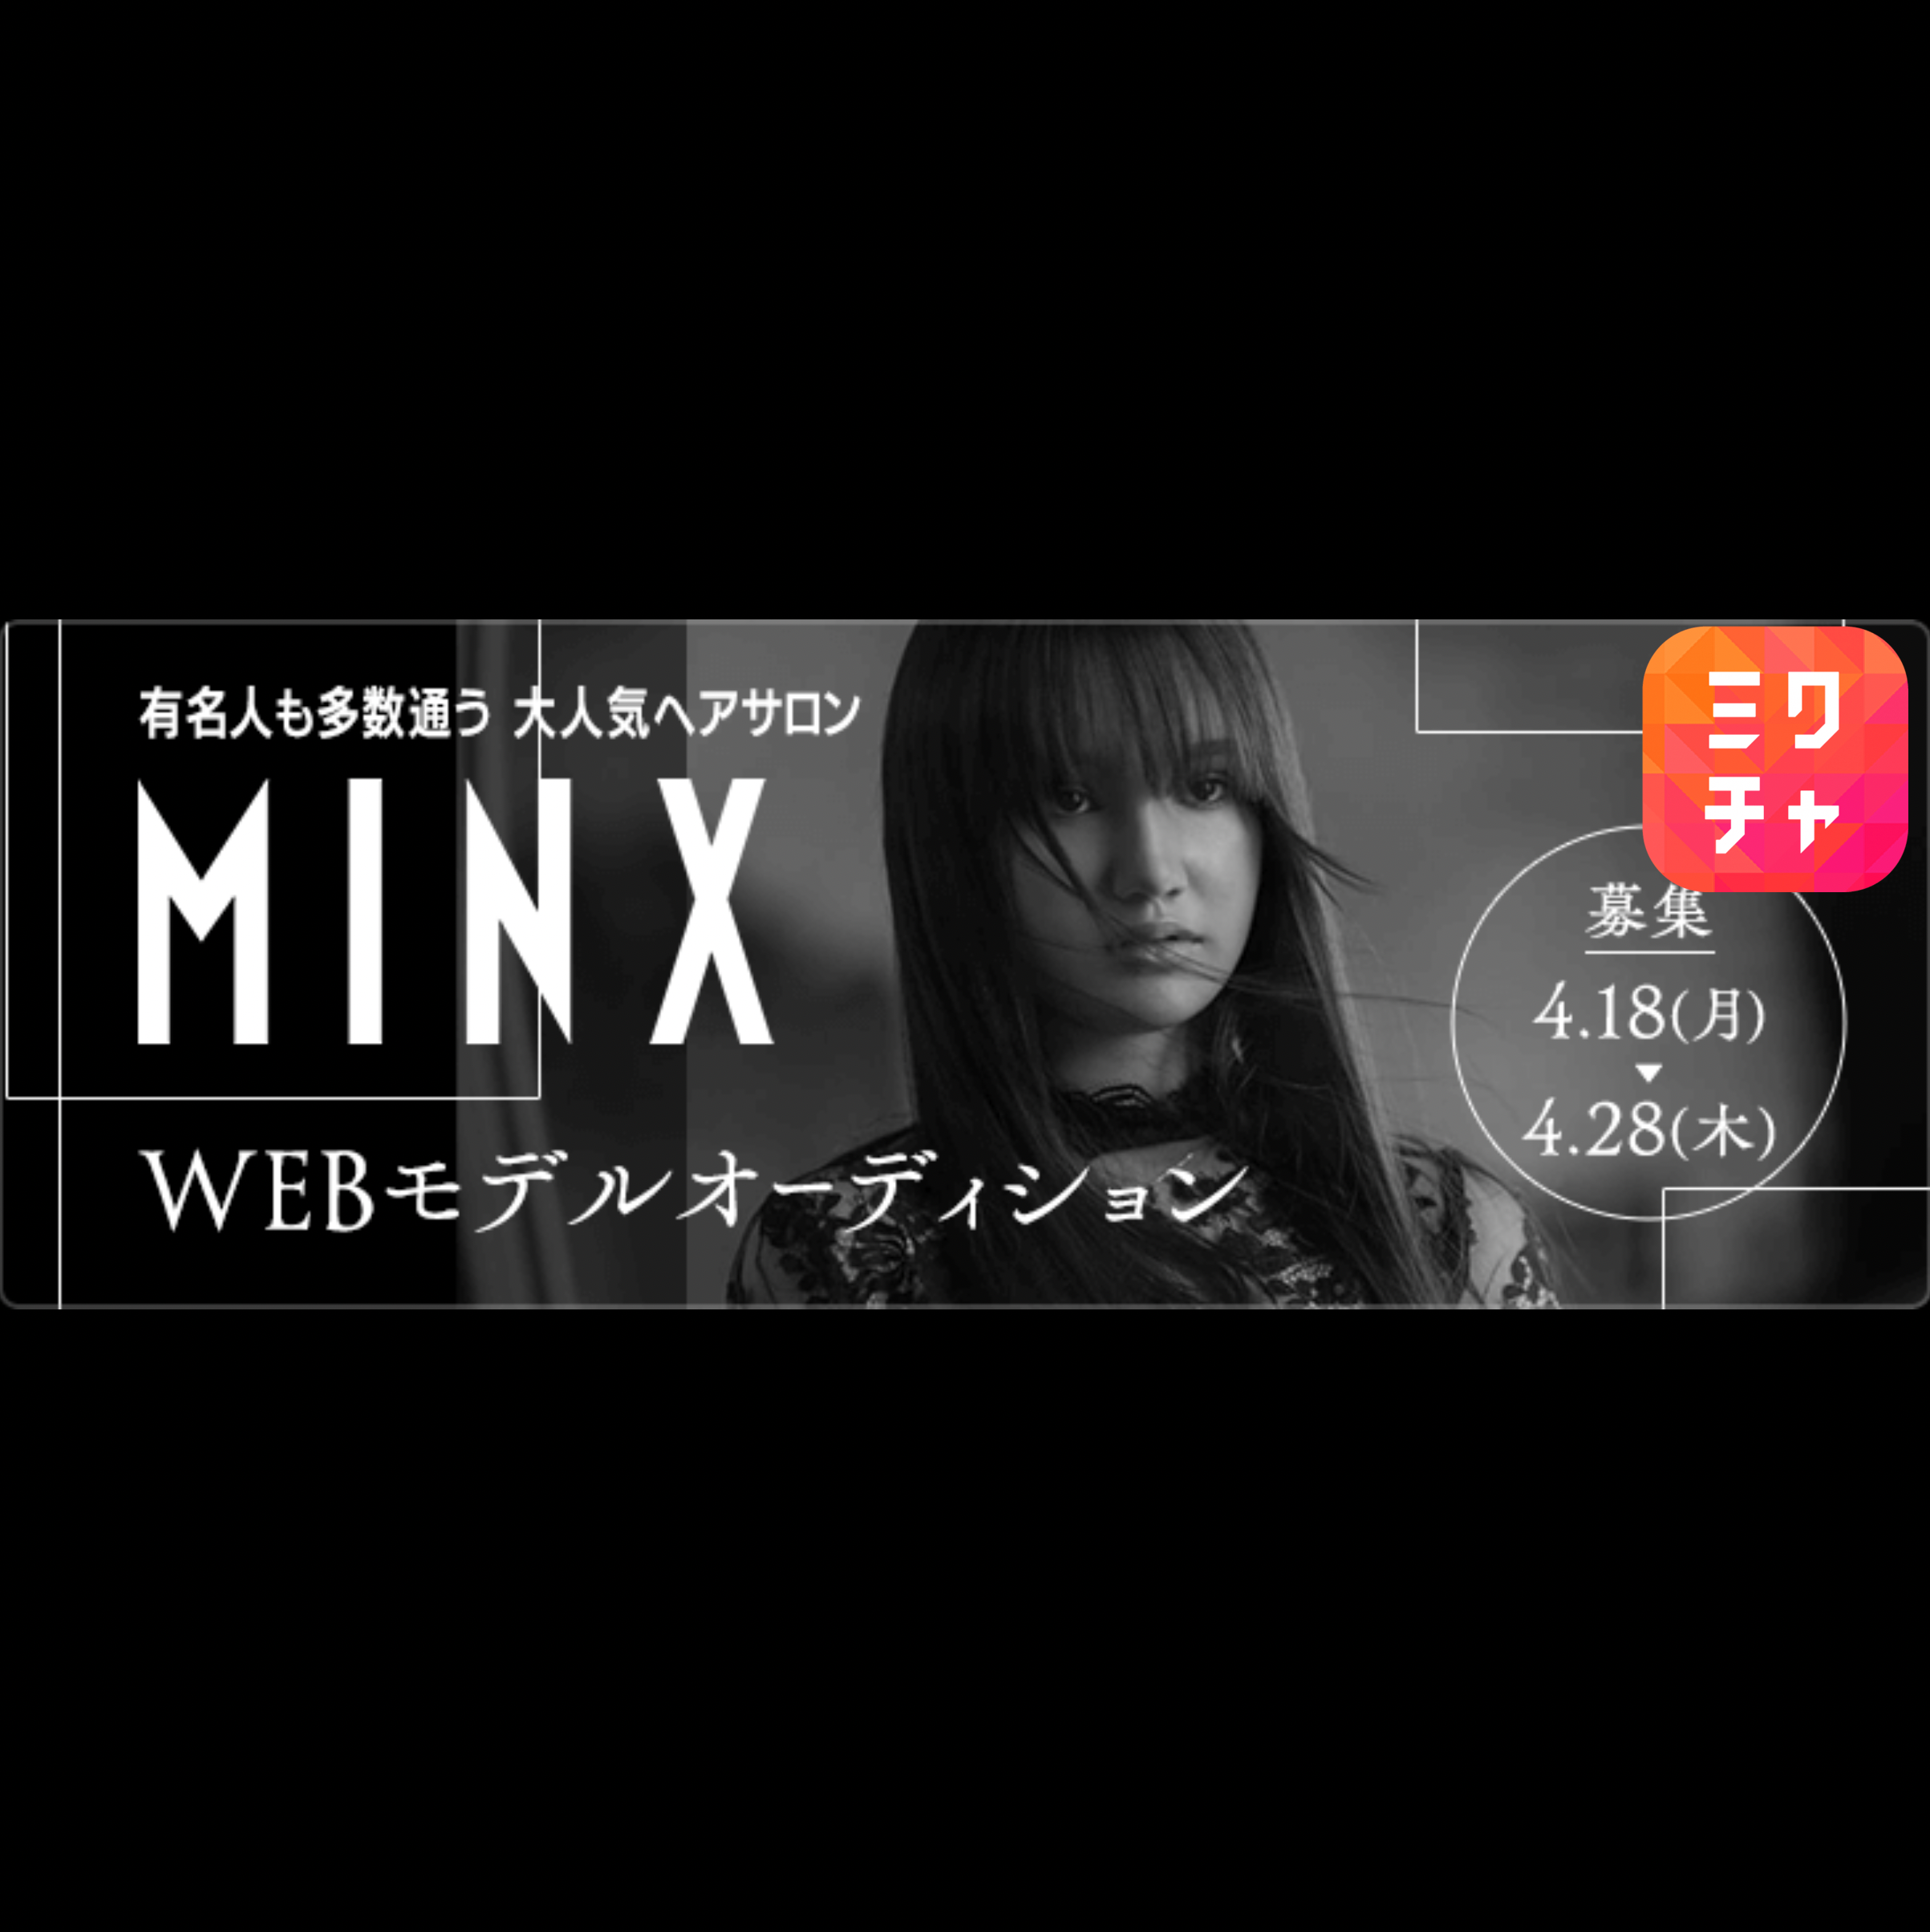 MINX WEBモデルオーディション開催！配信アプリ「ミクチャ」